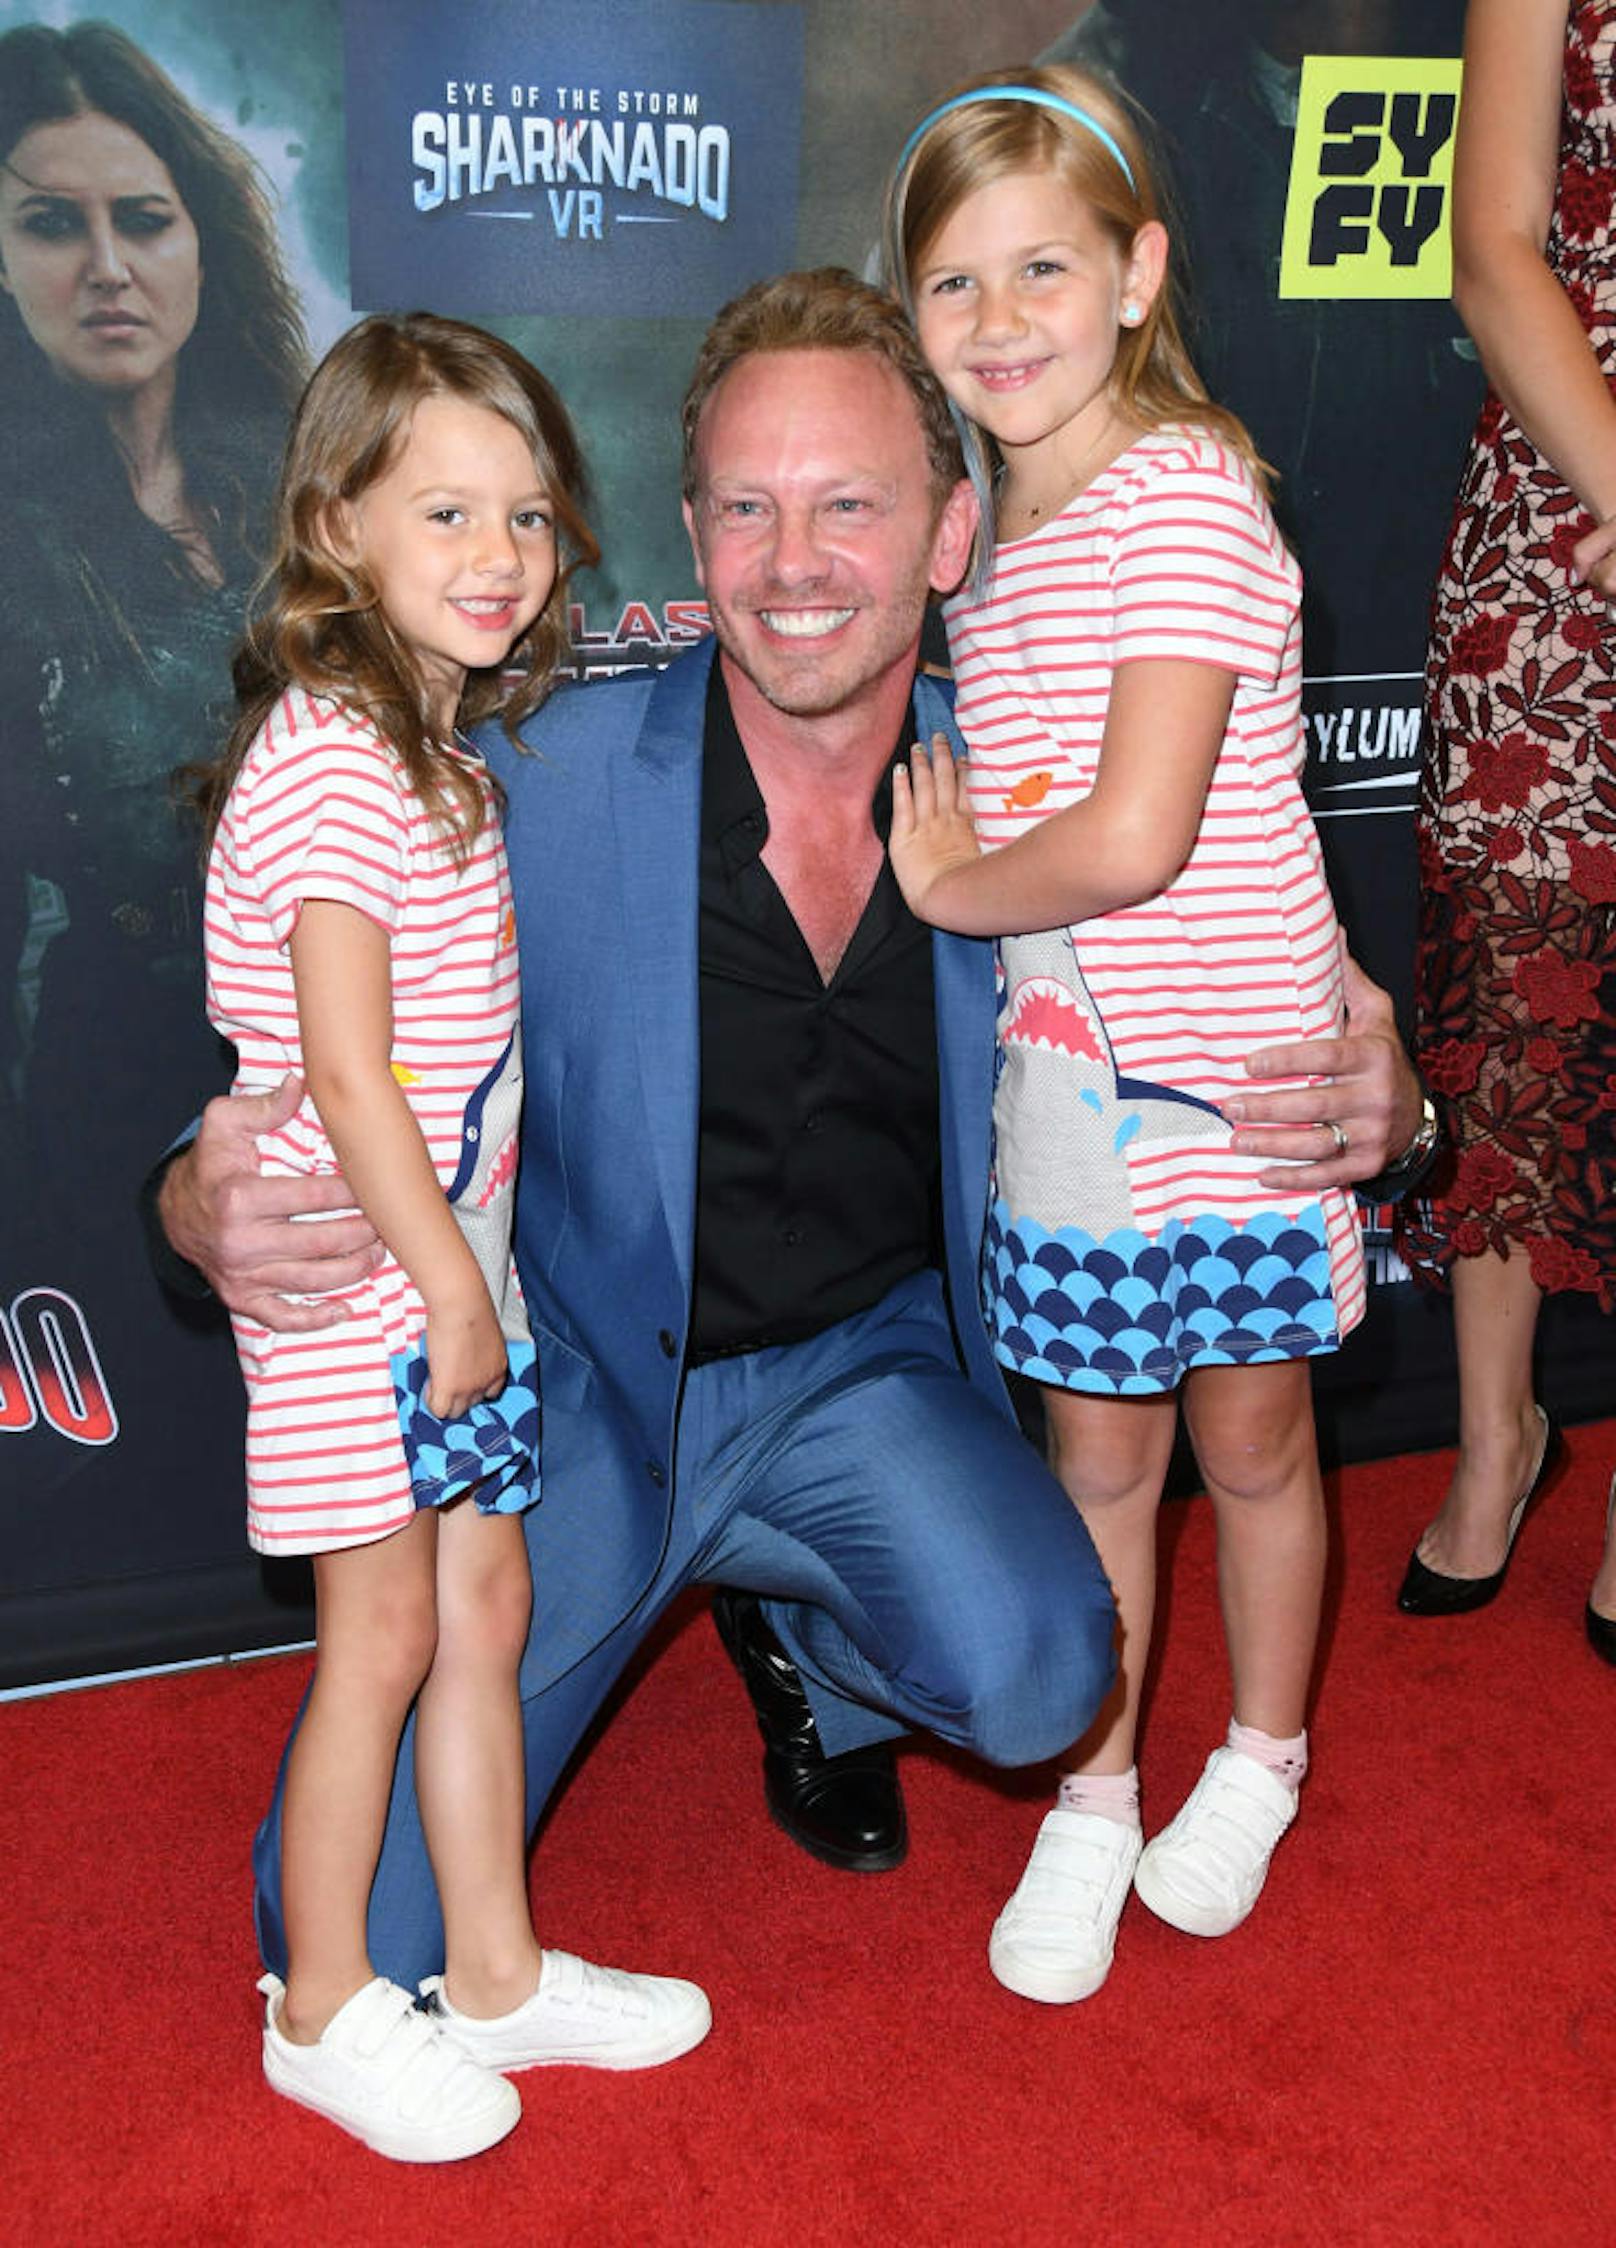 Ian Ziering mit seinen Töchtern bei der Premiere von "The Last Sharknado: It's About Time" (2018)